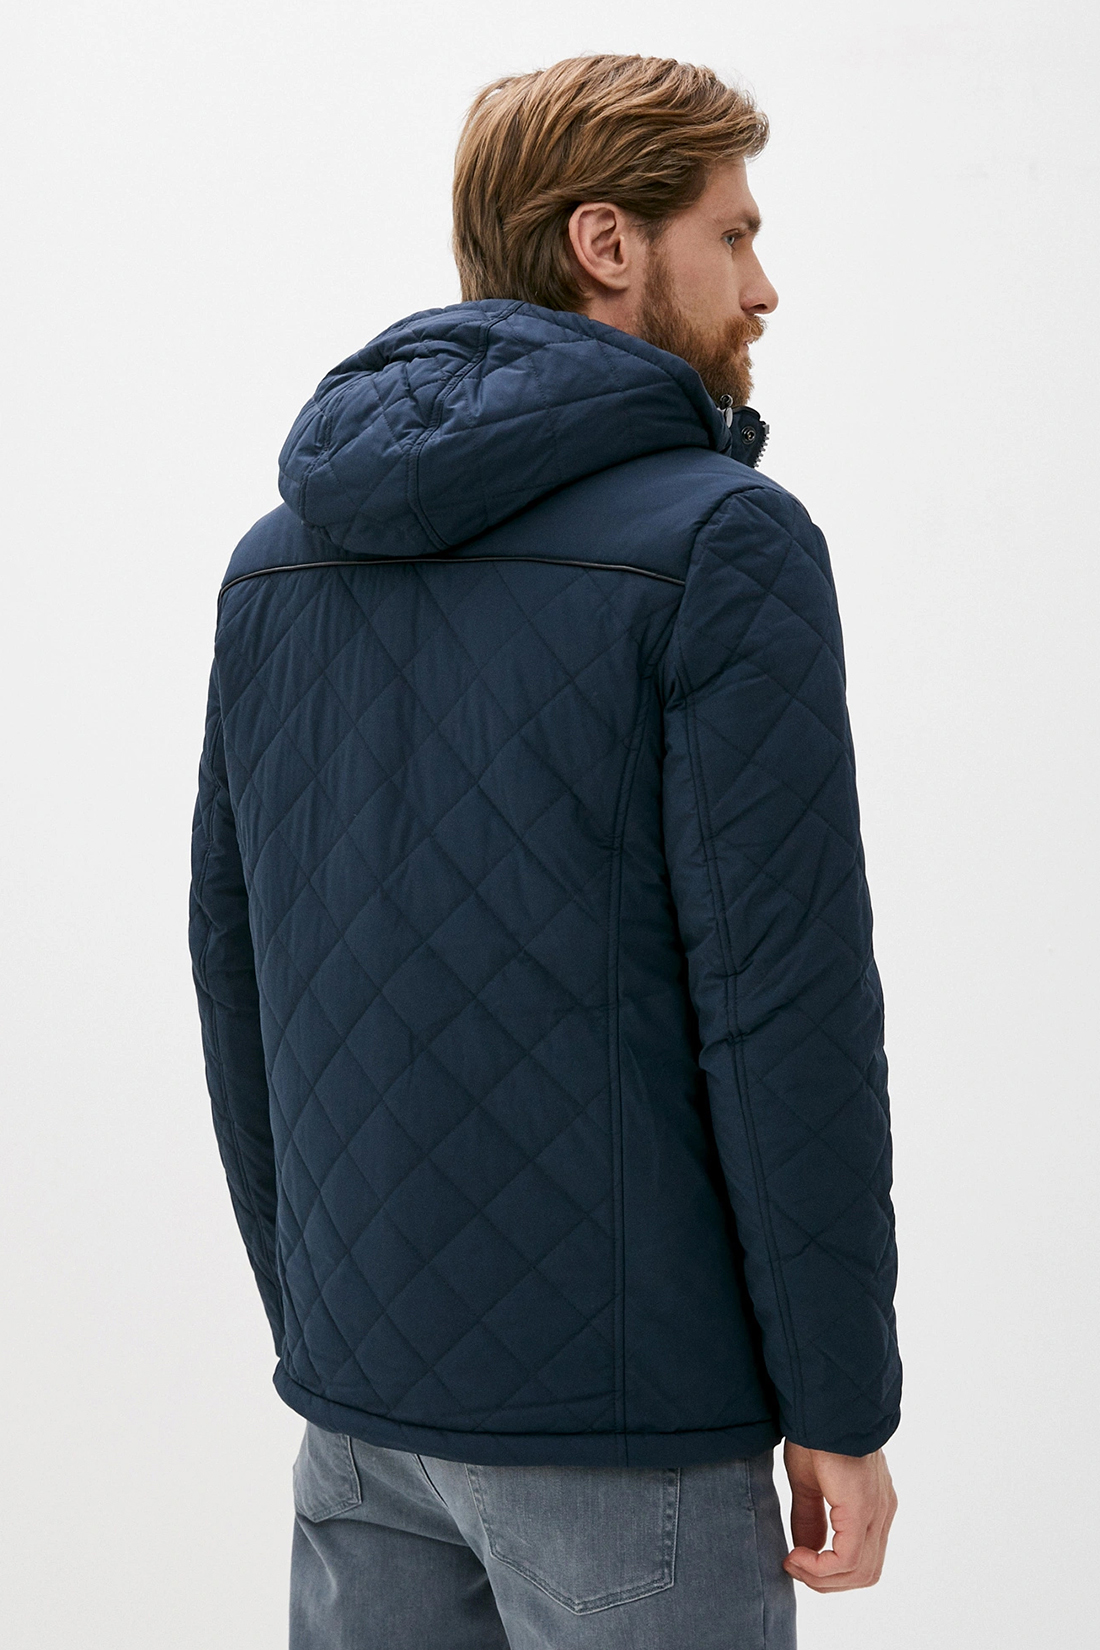 Куртка (арт. baon B530535), размер XL, цвет синий Куртка (арт. baon B530535) - фото 2